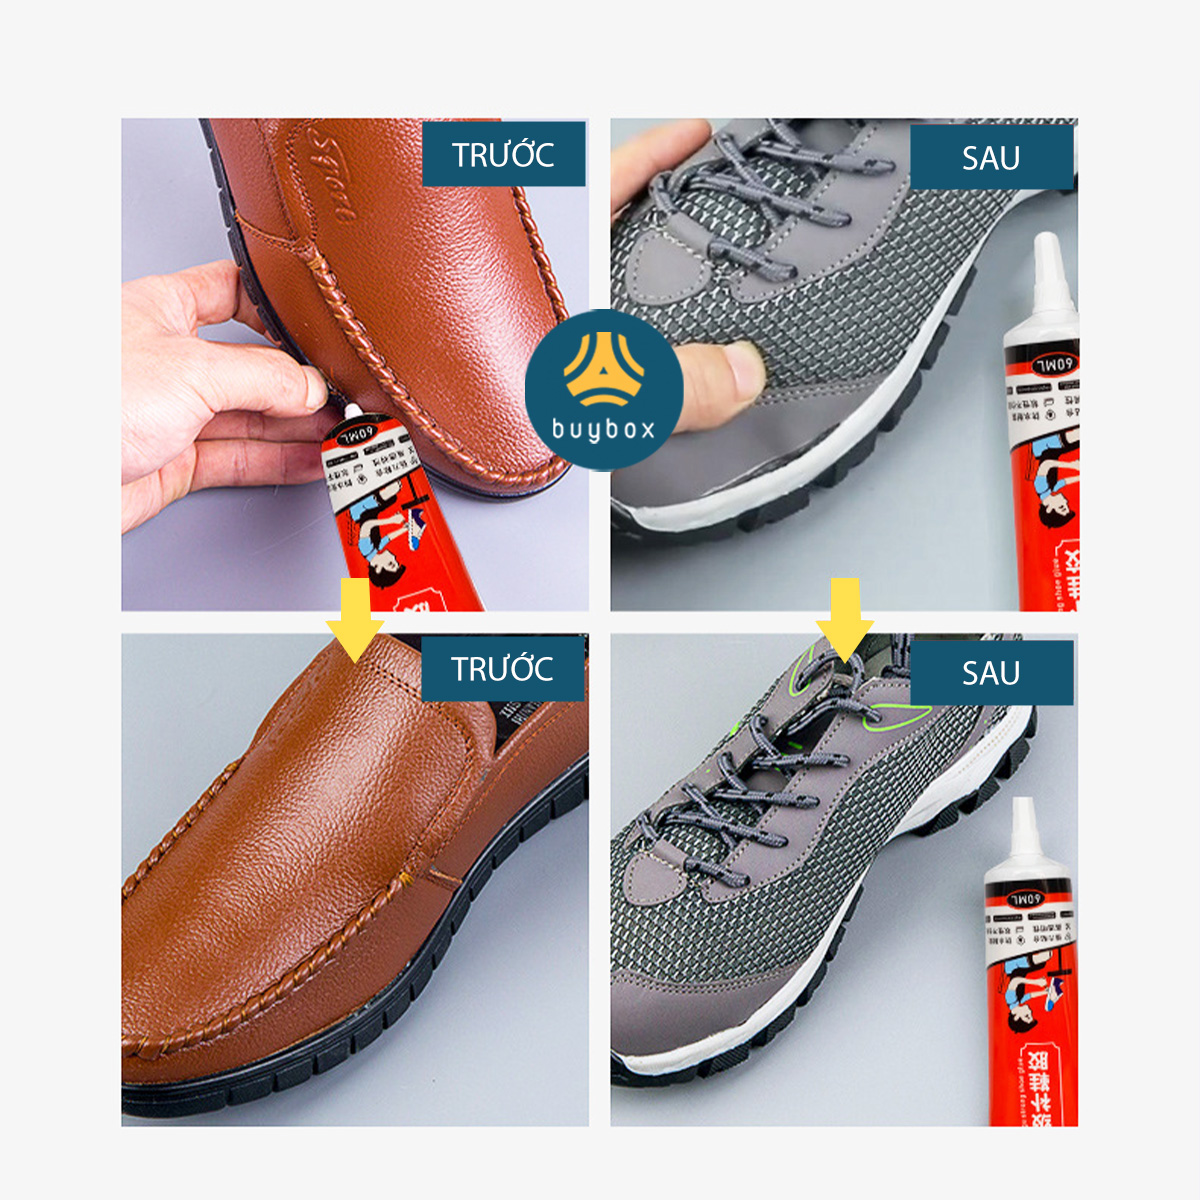 Keo dán giày bền chặt, chống thấm hiệu quả, thiết kế dạng kim dễ dàng sử dụng, tiện lợi - BuyBox - BBPK362